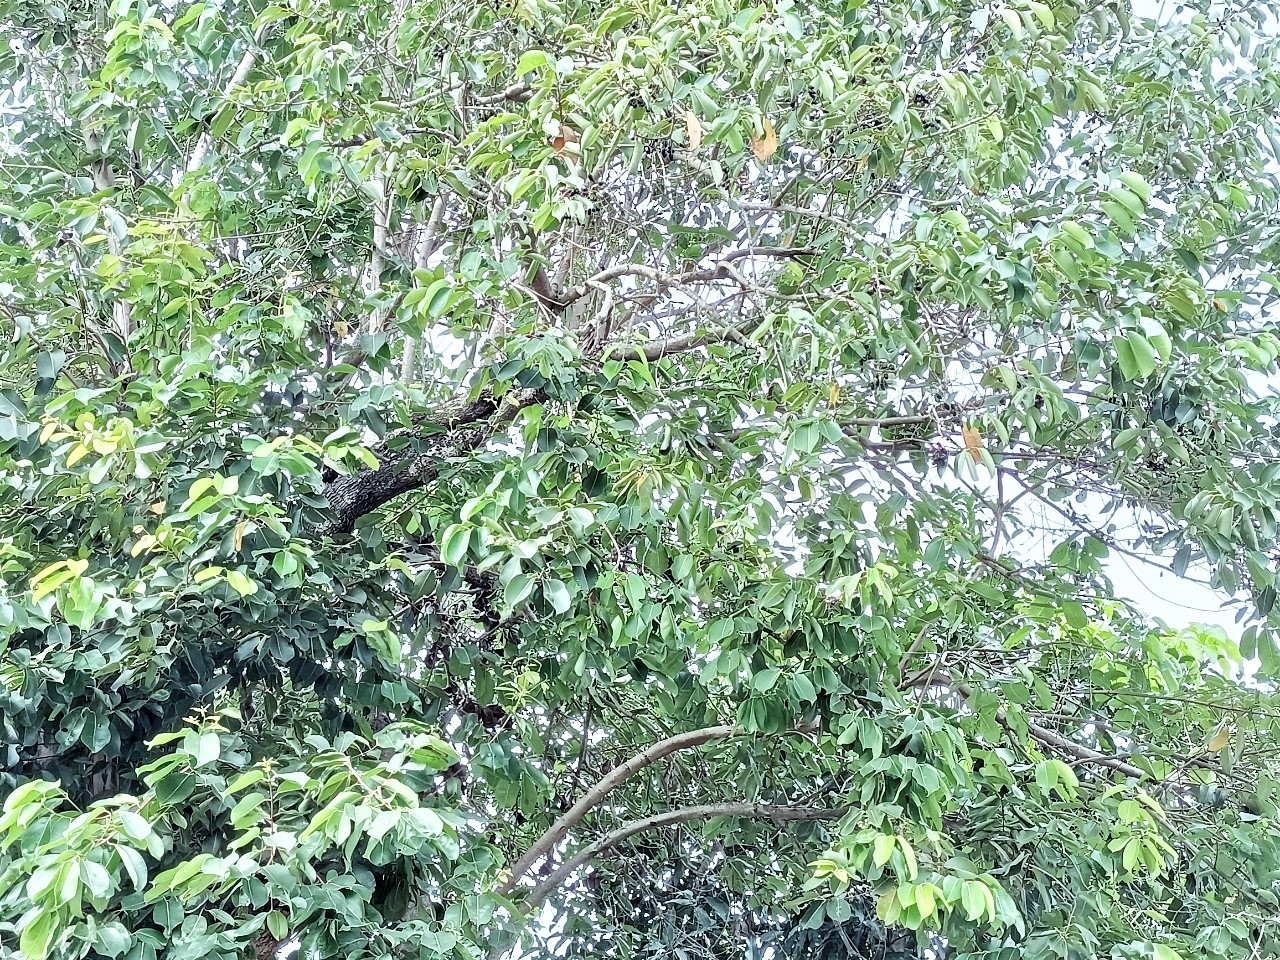 Thứ cây hiếm ai trồng, ra từng chùm trái dại tím đen ở An Giang, ấy thế mà thành đặc sản nhiều người vồ vập - Ảnh 3.